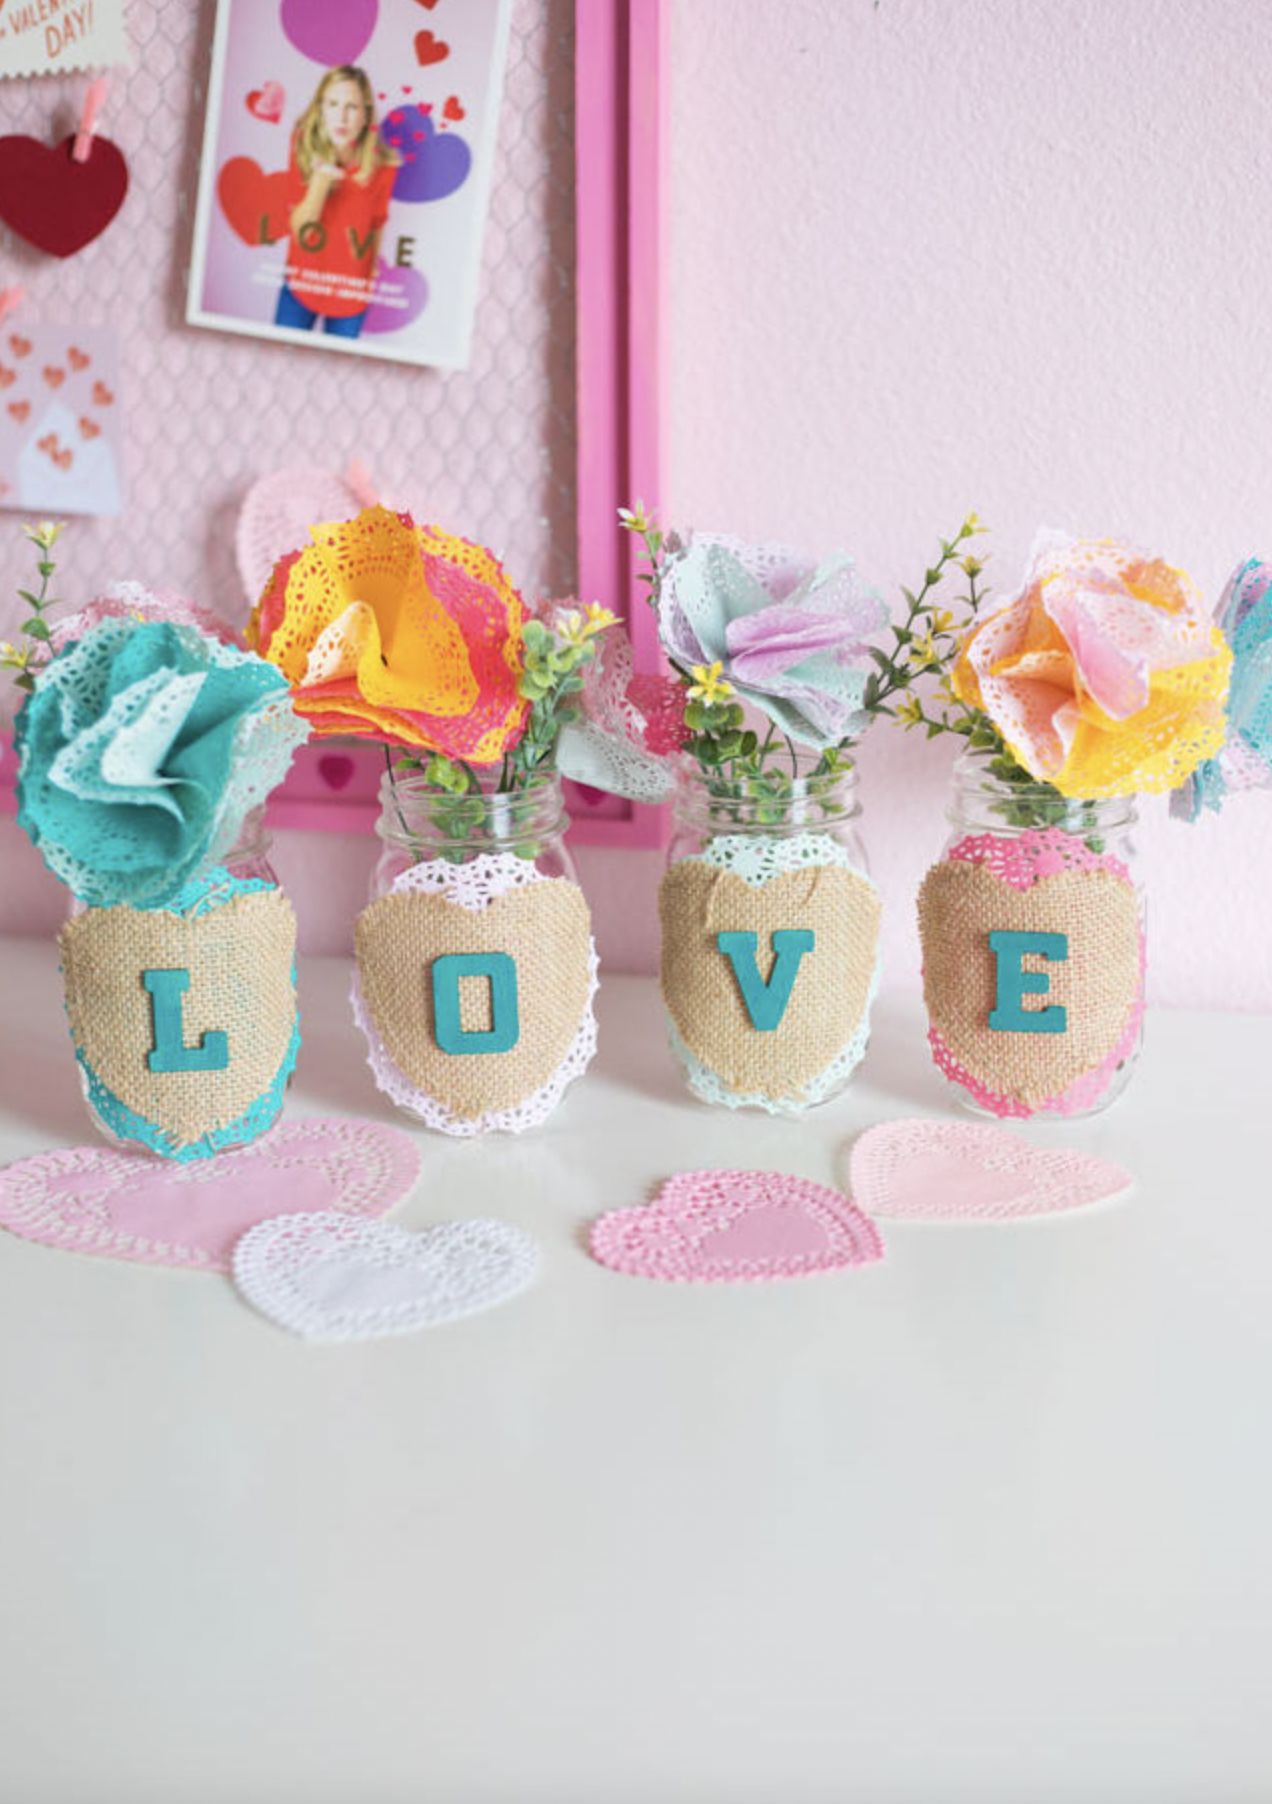 Thumbprint Flower Mason Jar - Mason Jar Crafts Love